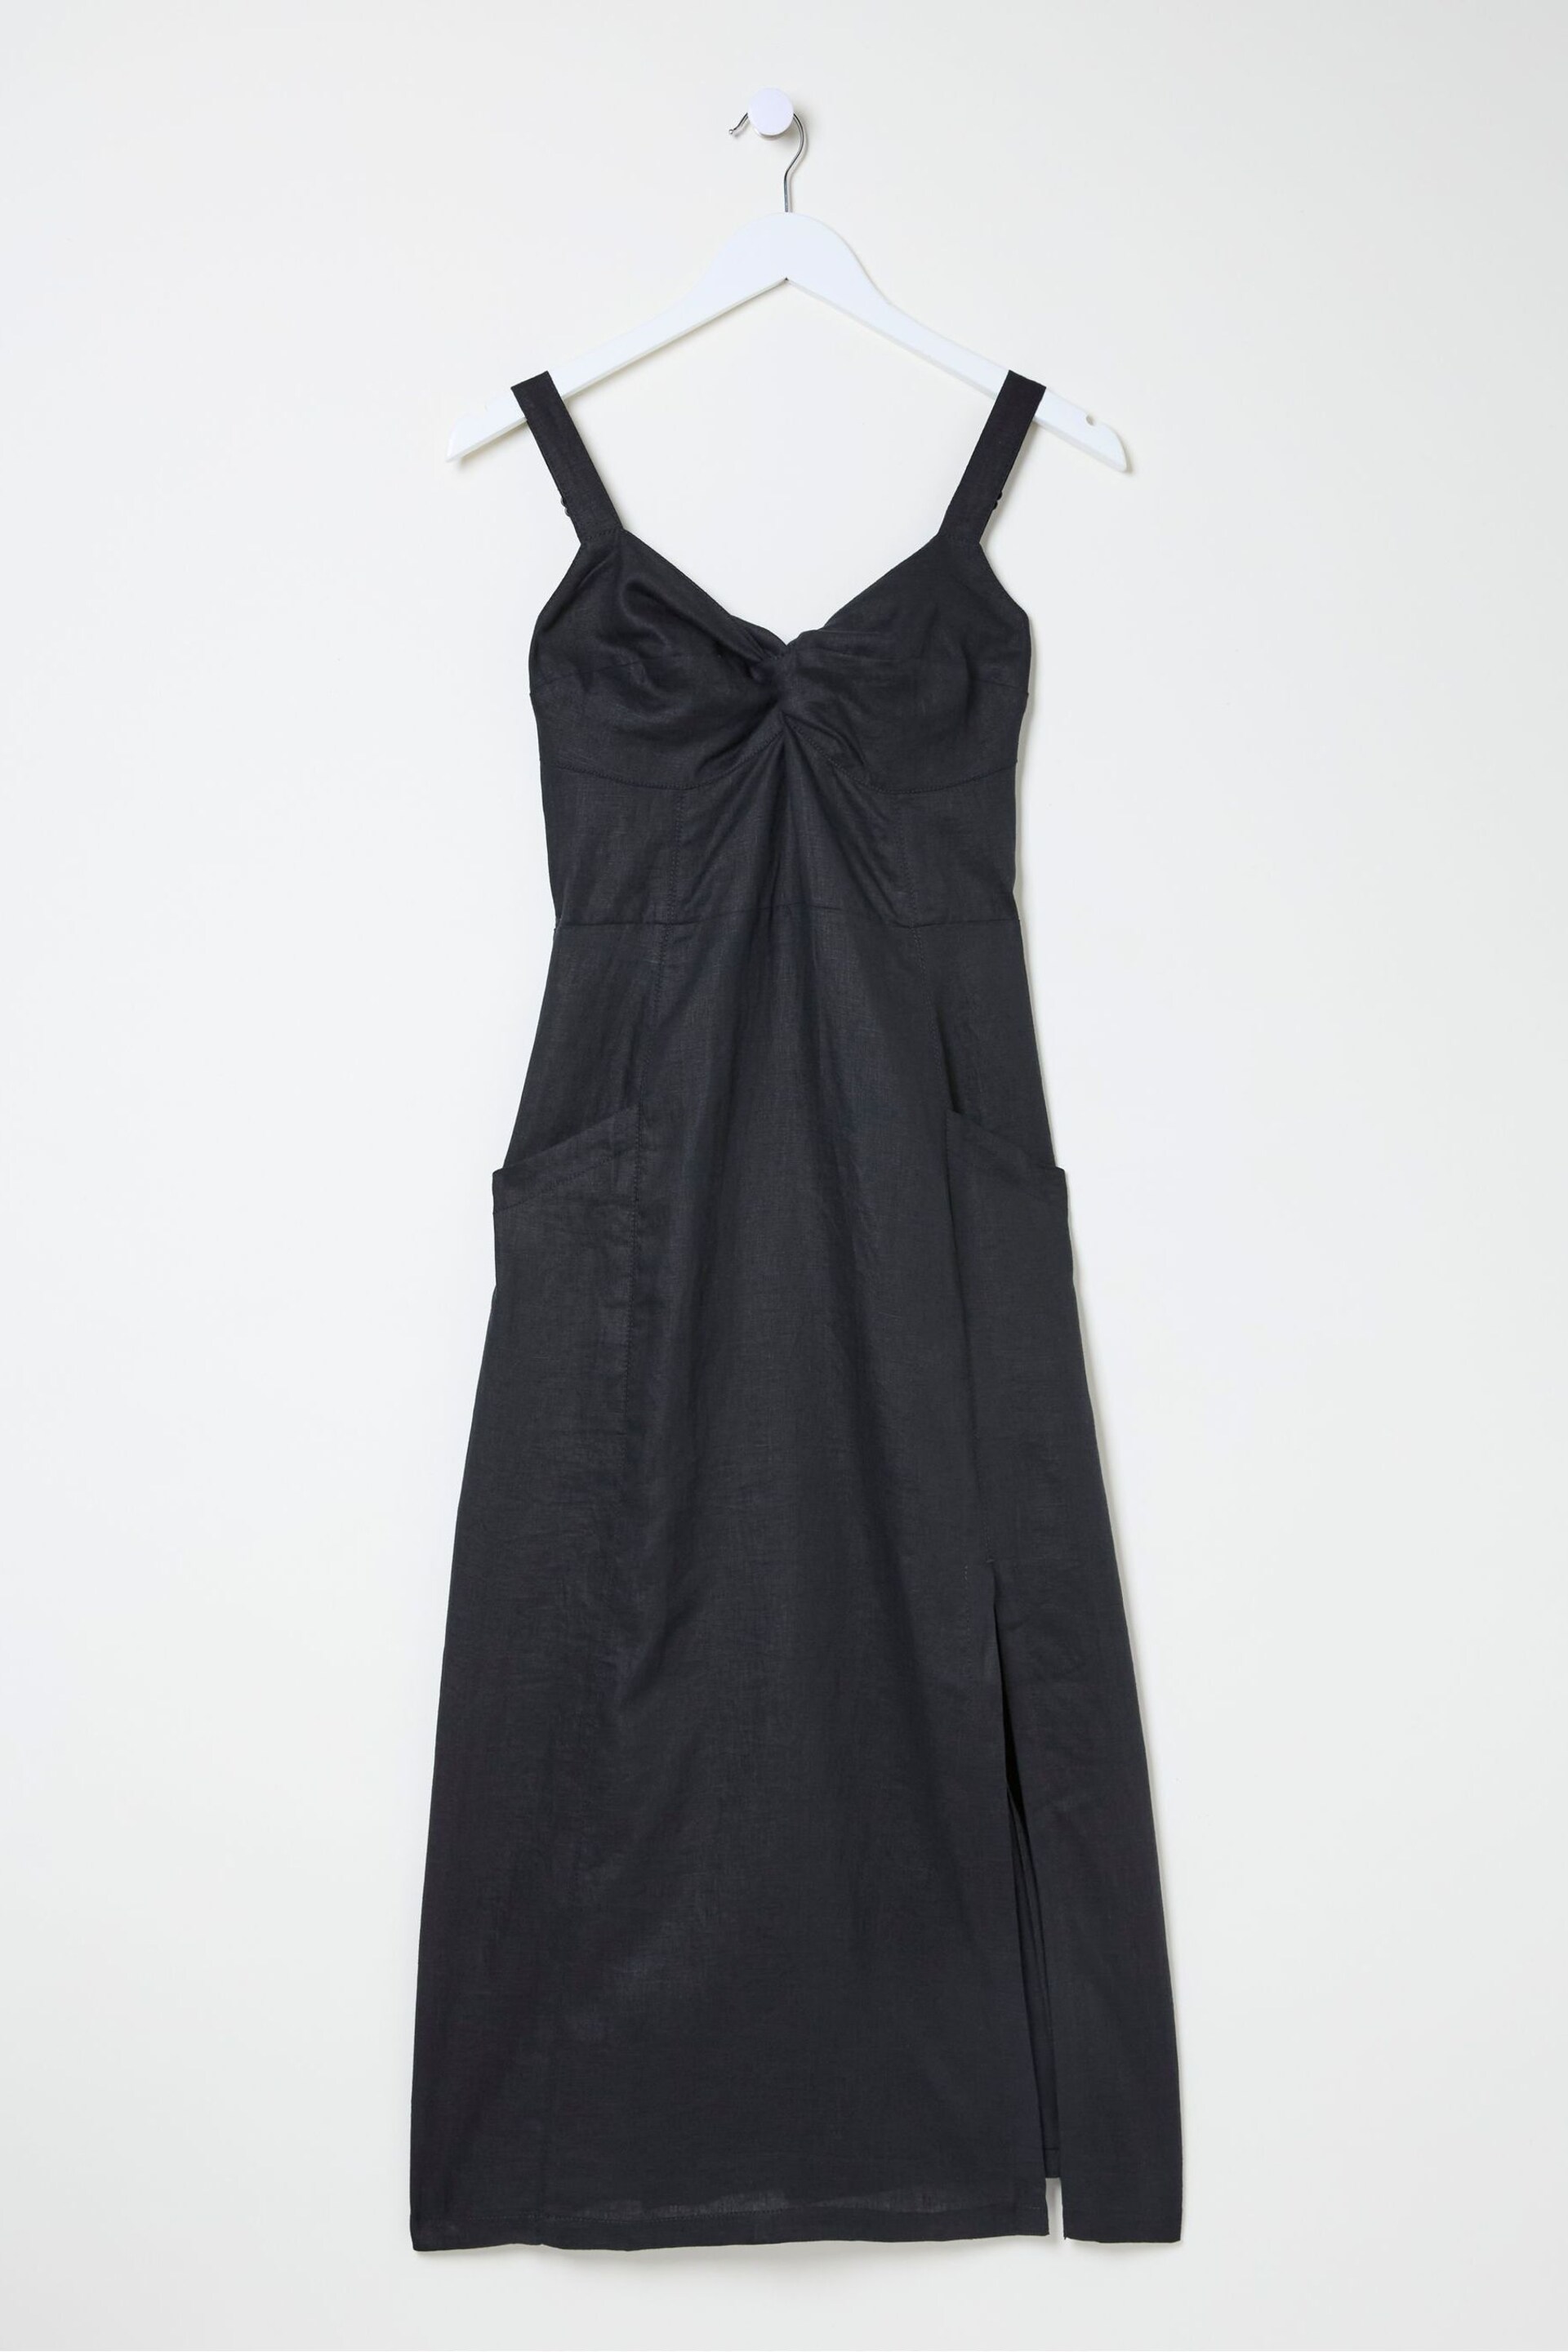 FatFace Black Talia Linen Midi Dress - Image 6 of 6